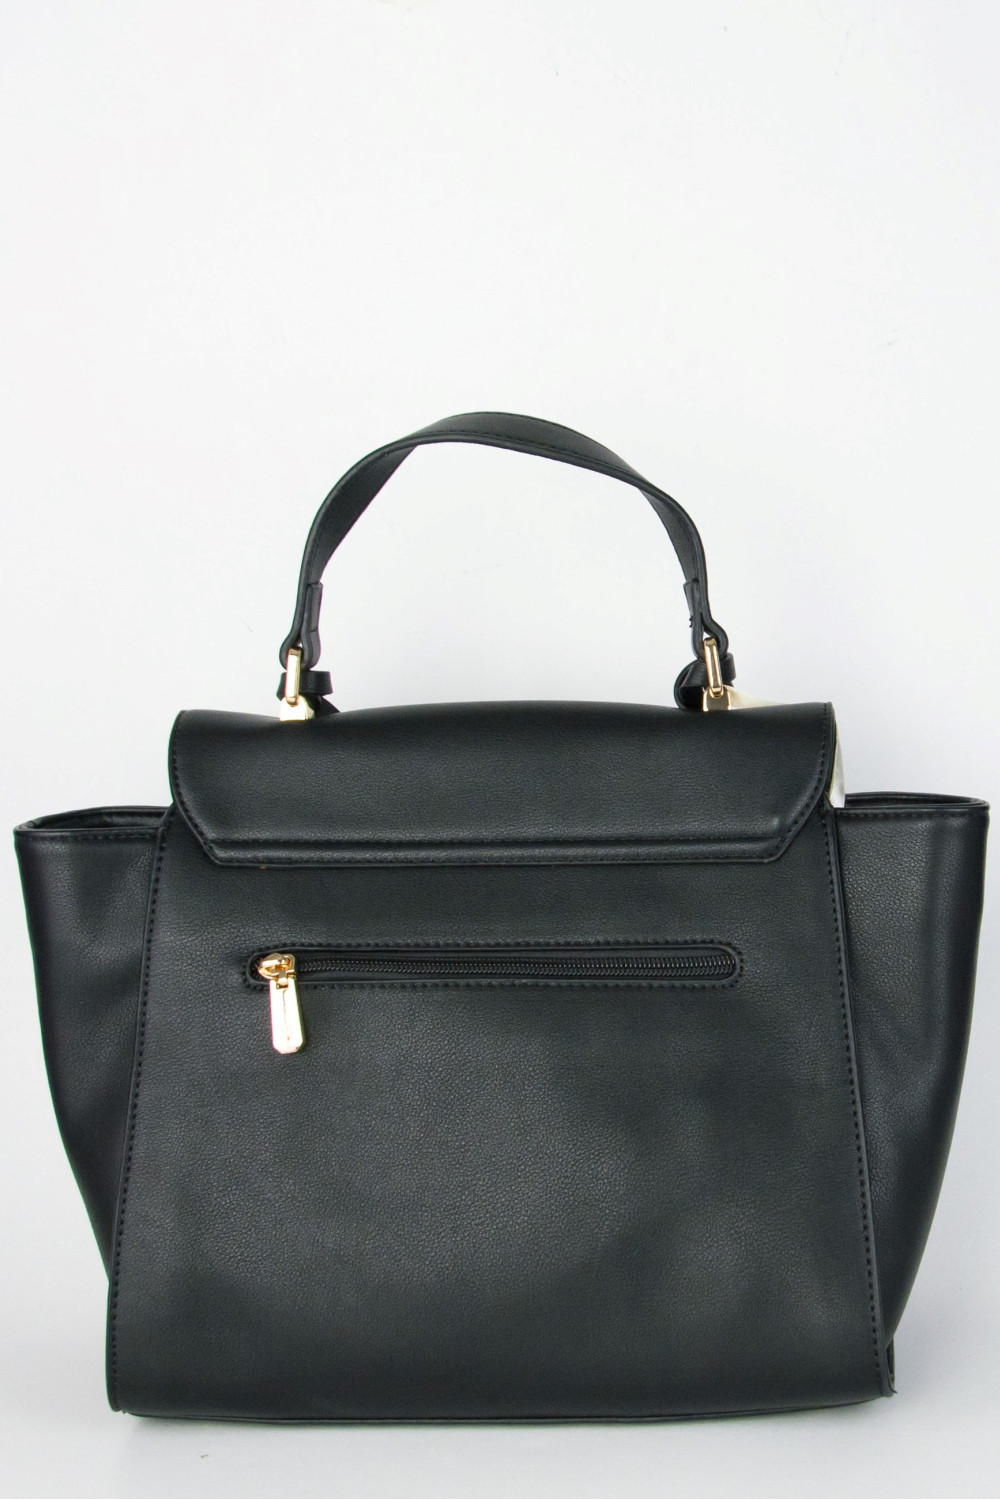 Γυναικεία μαύρη κλασσική τσάντα ώμου με λαβή δερματίνη DJX17021W